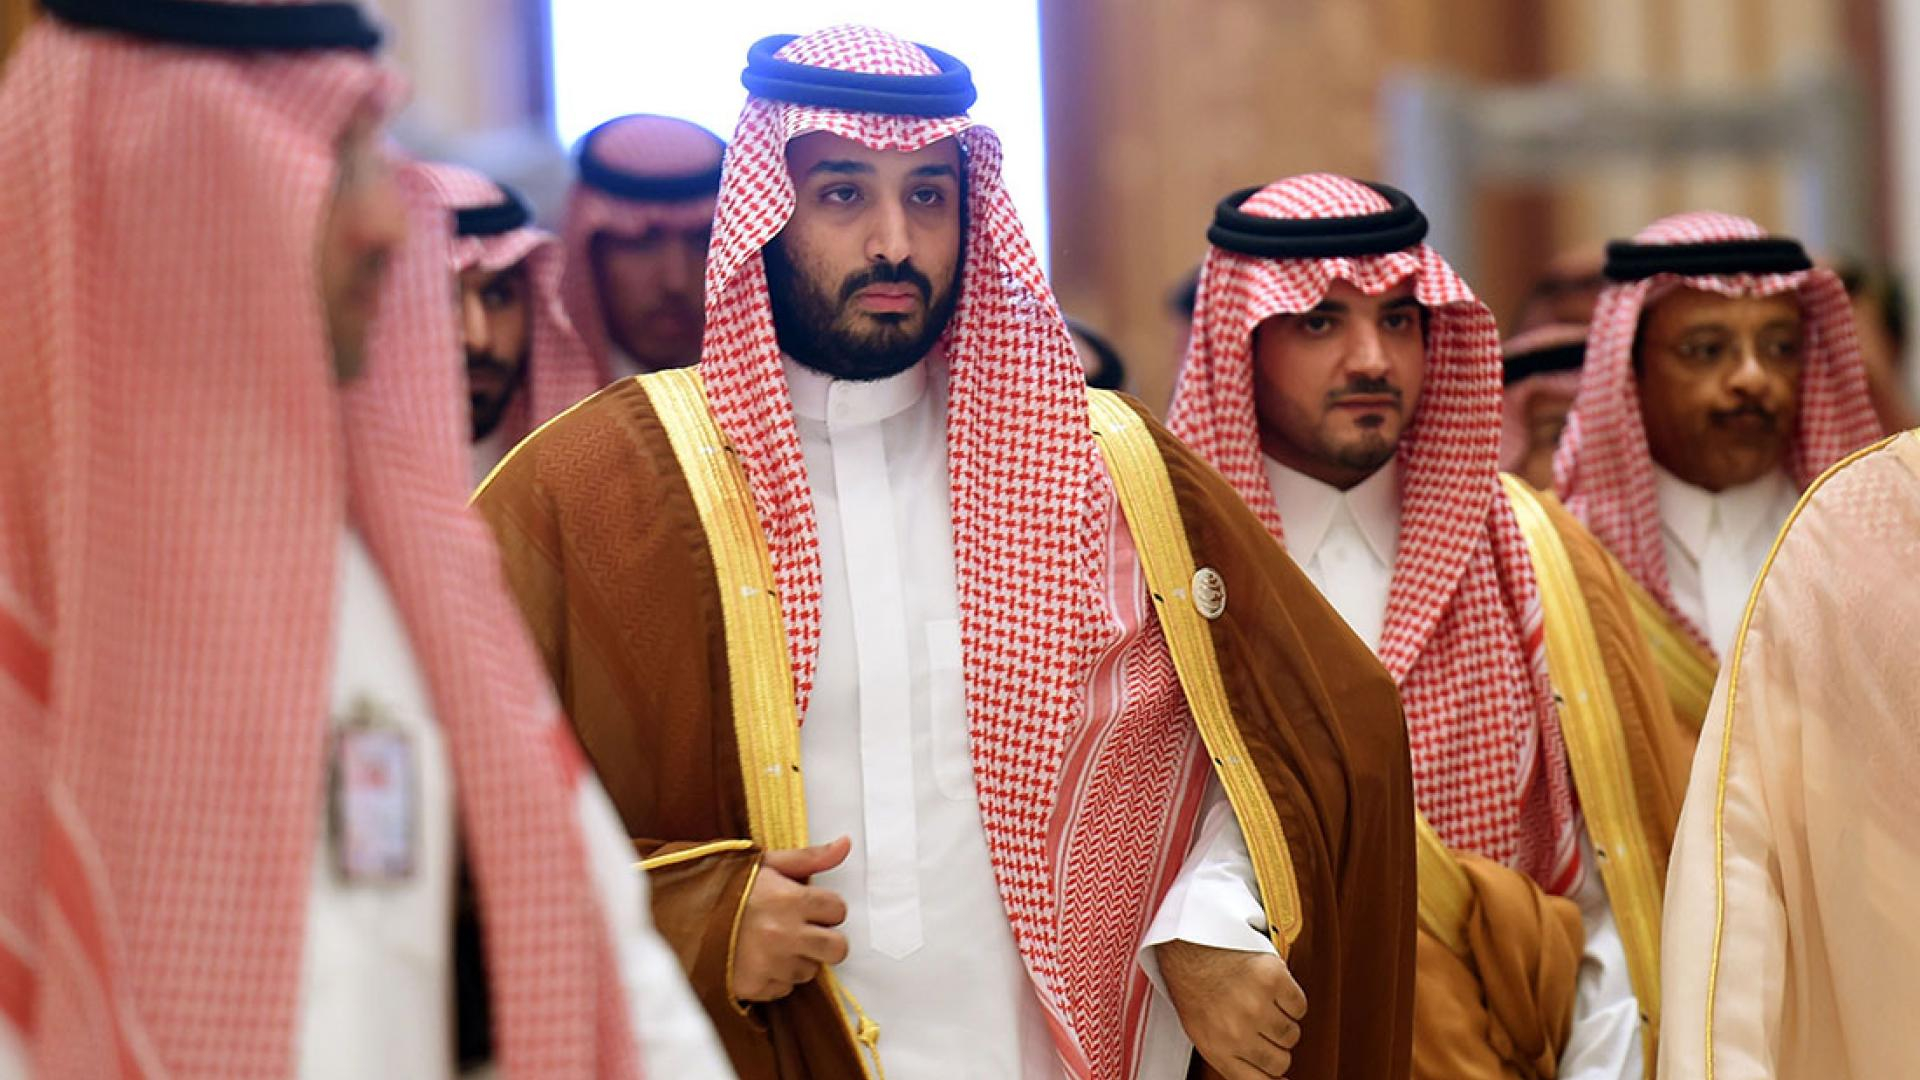 СМИ: У 150 членов королевской семьи Саудовской Аравии выявили коронавирус